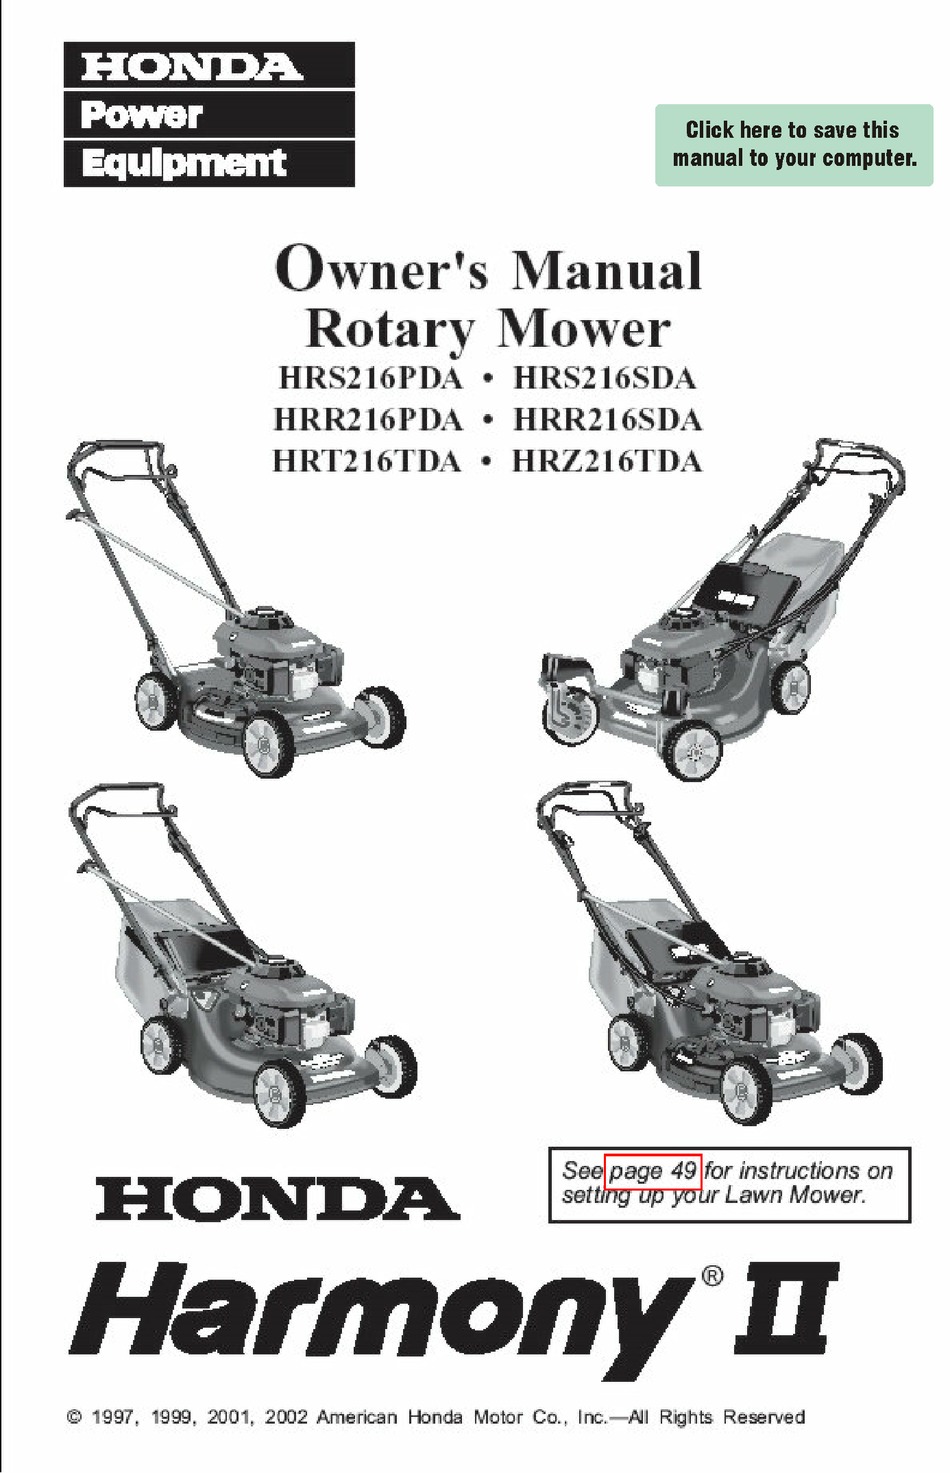 Authorized Honda Lawn Mower Repair Shop Near Me - Shop Poin